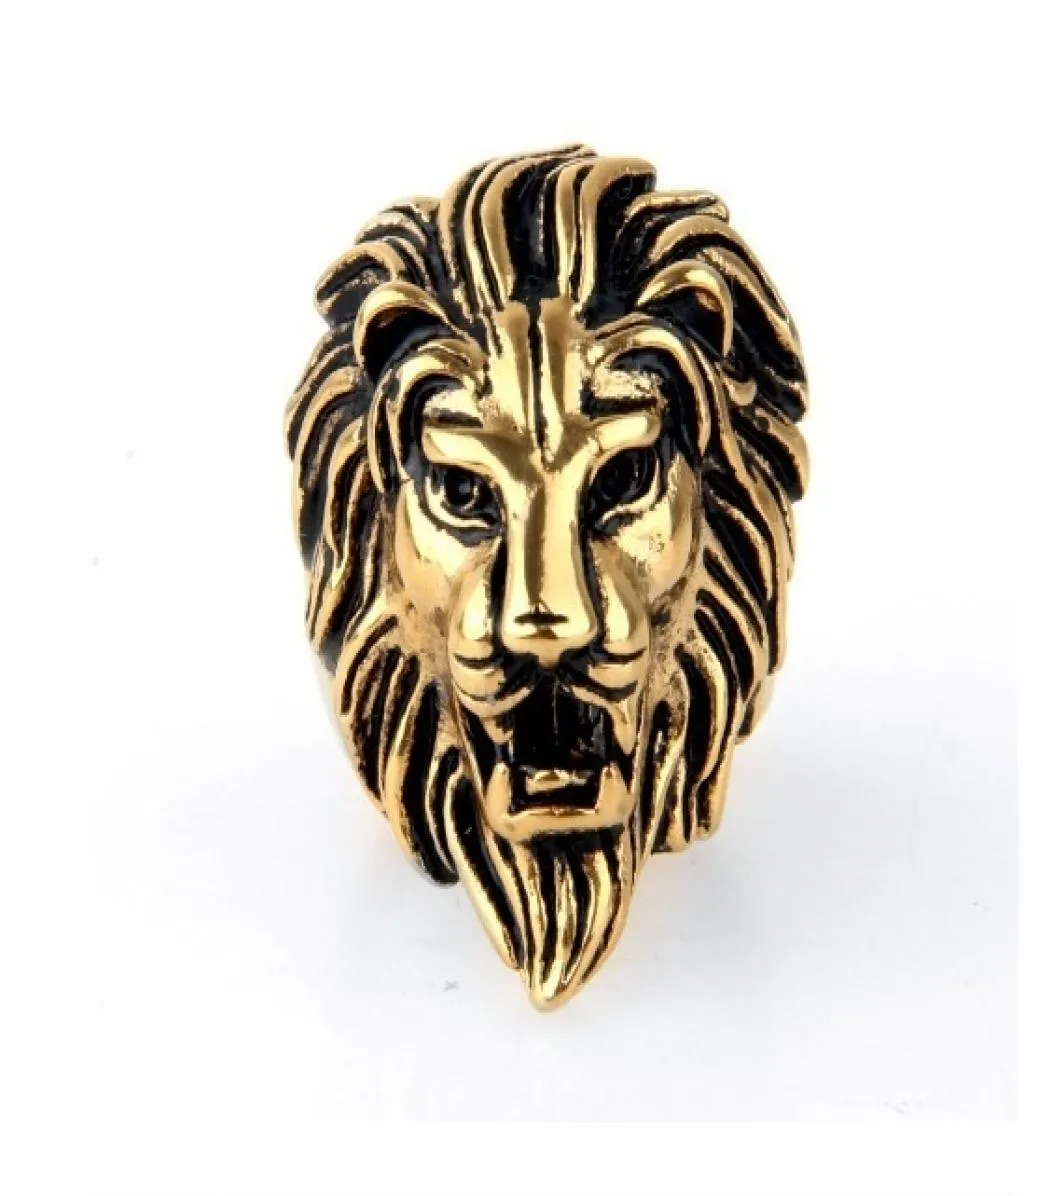 Vintage Jewelry Ganz dominerein Löwenkopf Ring Europa und Amerika Cast Lion King Ring Gold Silber US -Größe 7156556173